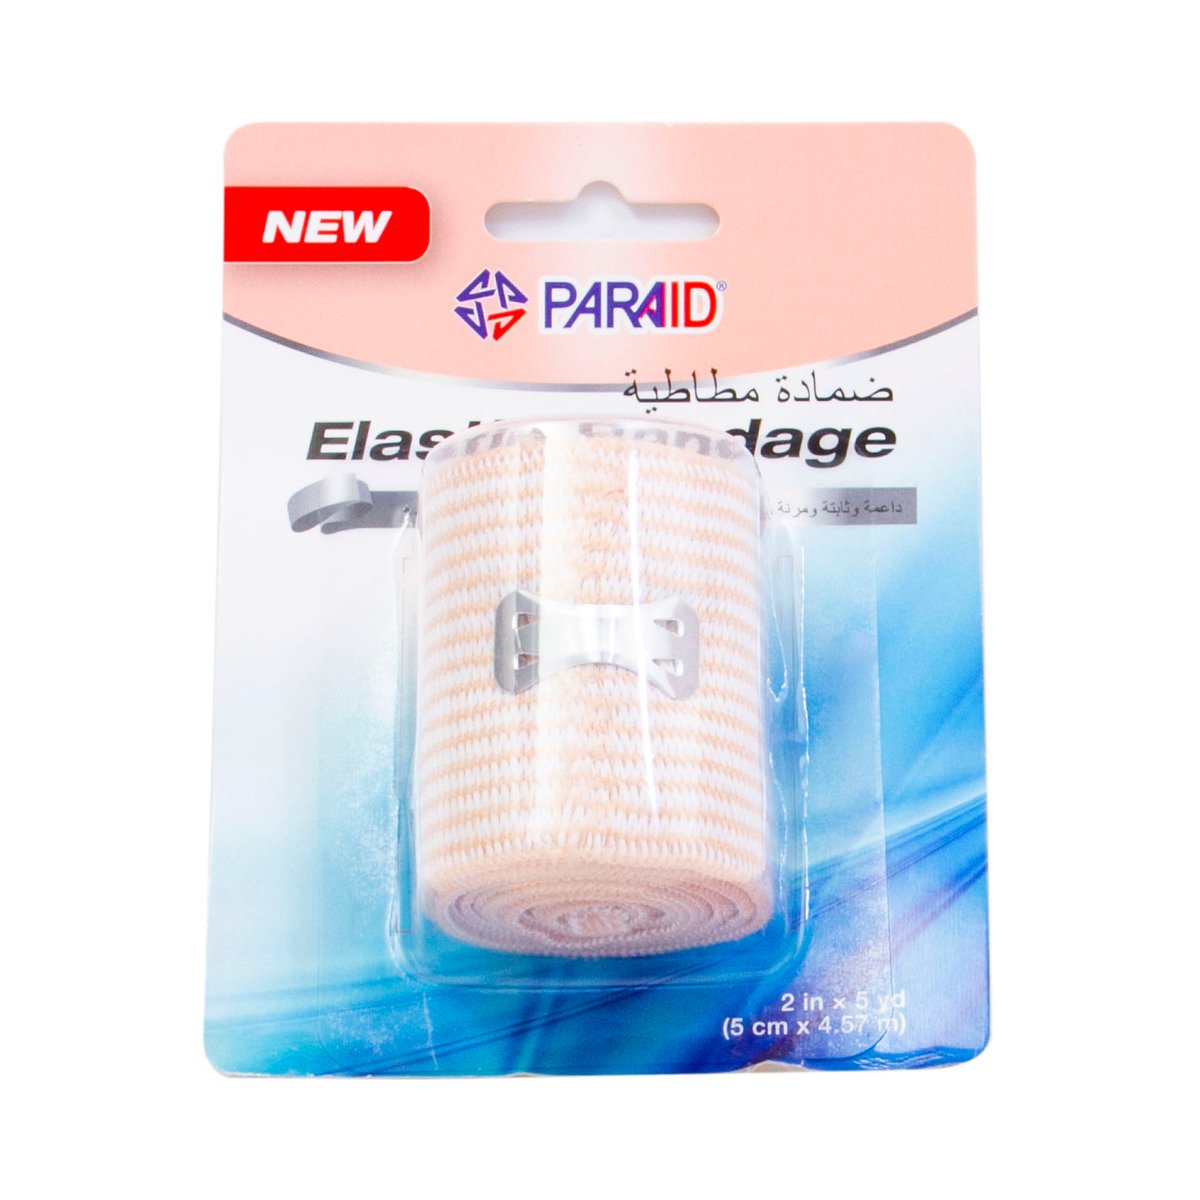 Paraid Elastic Bandage 5cm x 4.75m 1 pc